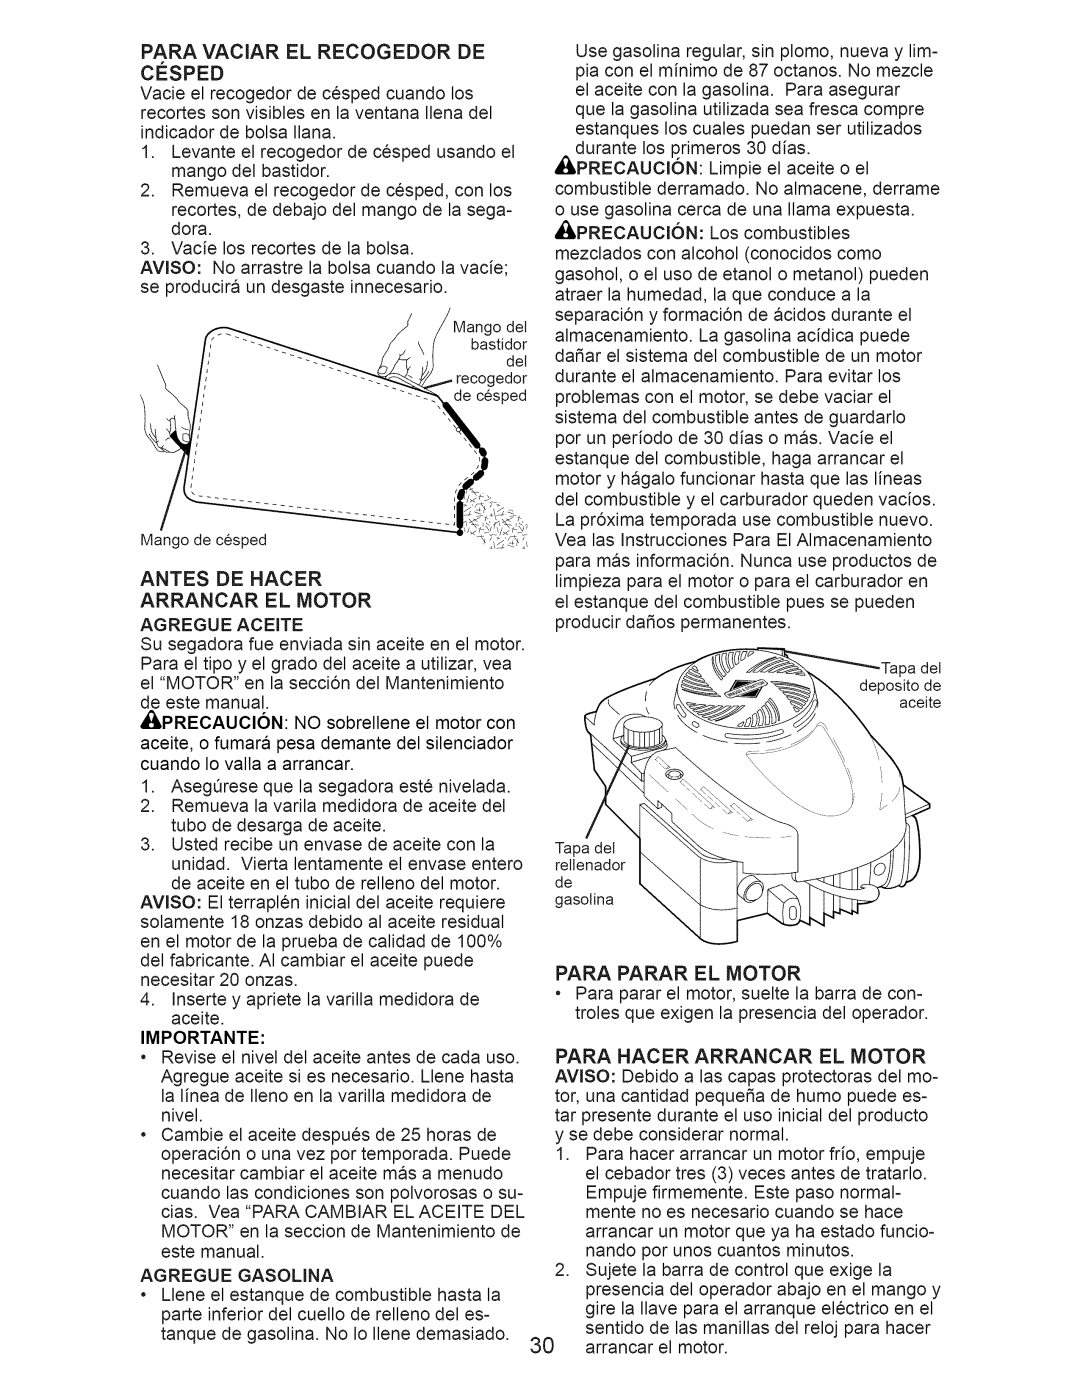 Craftsman 917.374362 manual Antes De Hacer Arrancar El Motor, Para Parar El Motor 